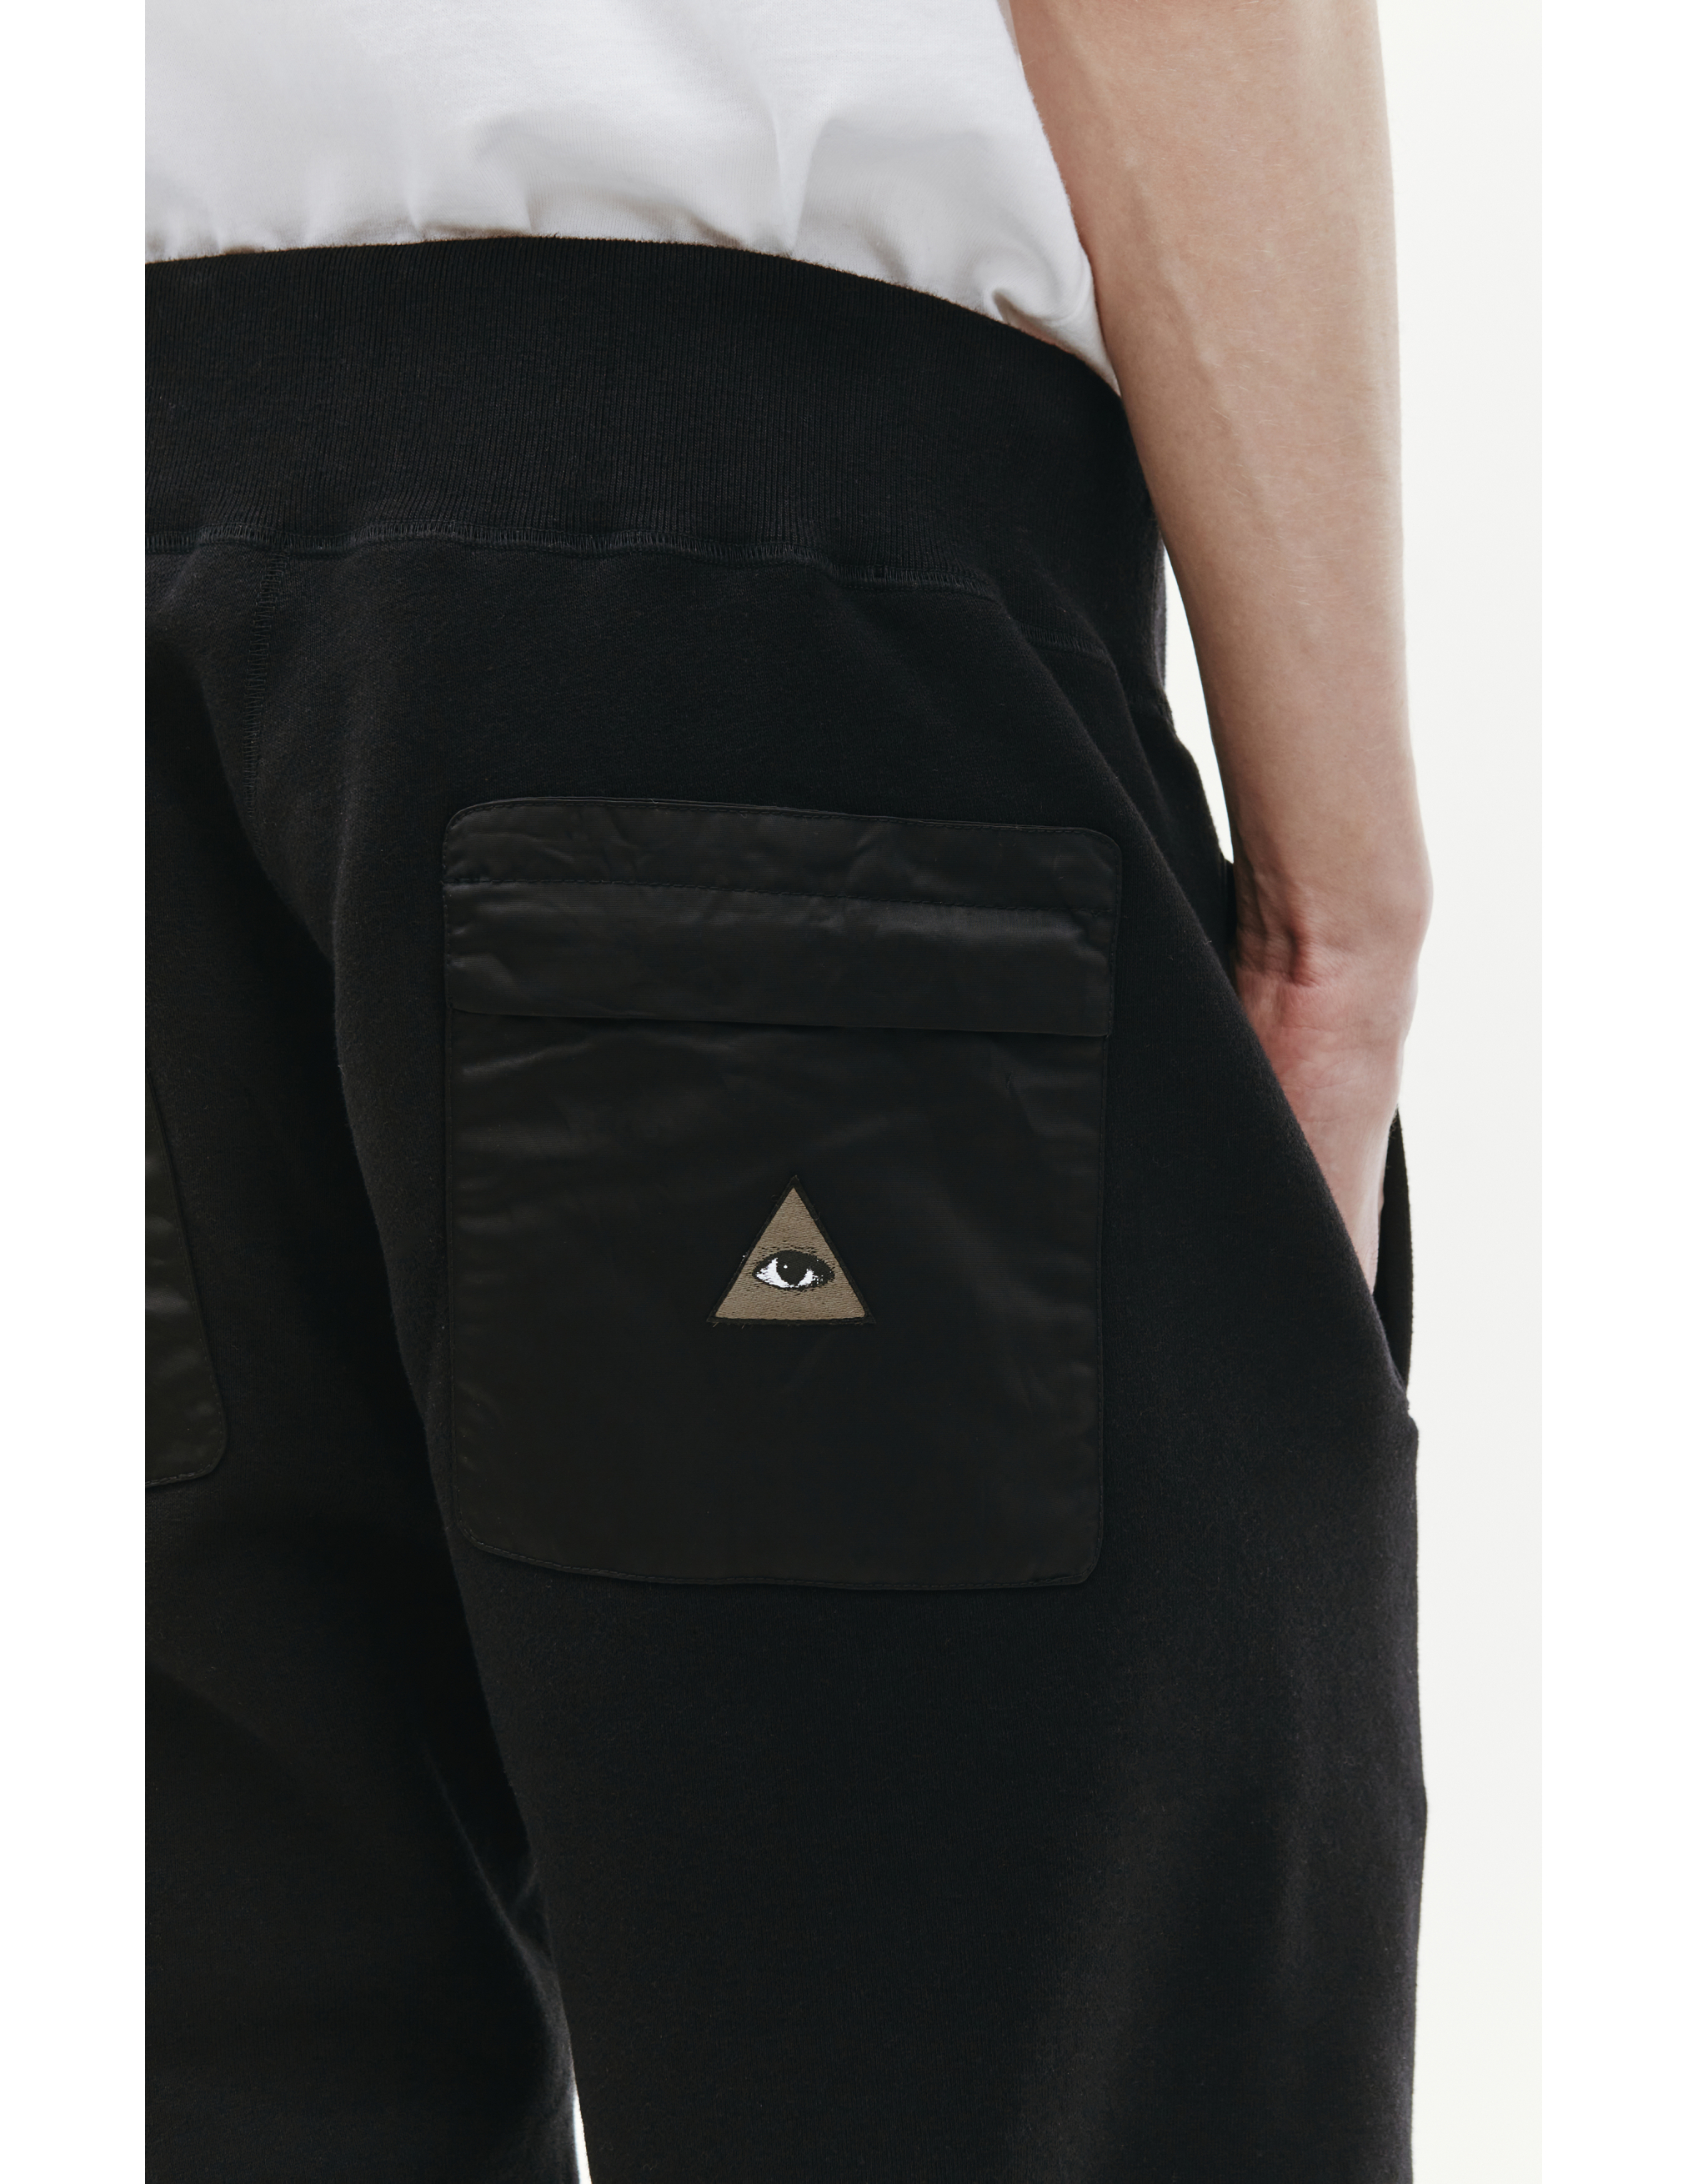 Спортивные брюки с вышивкой на кармане Undercover UC2B4503/3, размер 5 UC2B4503/3 - фото 5